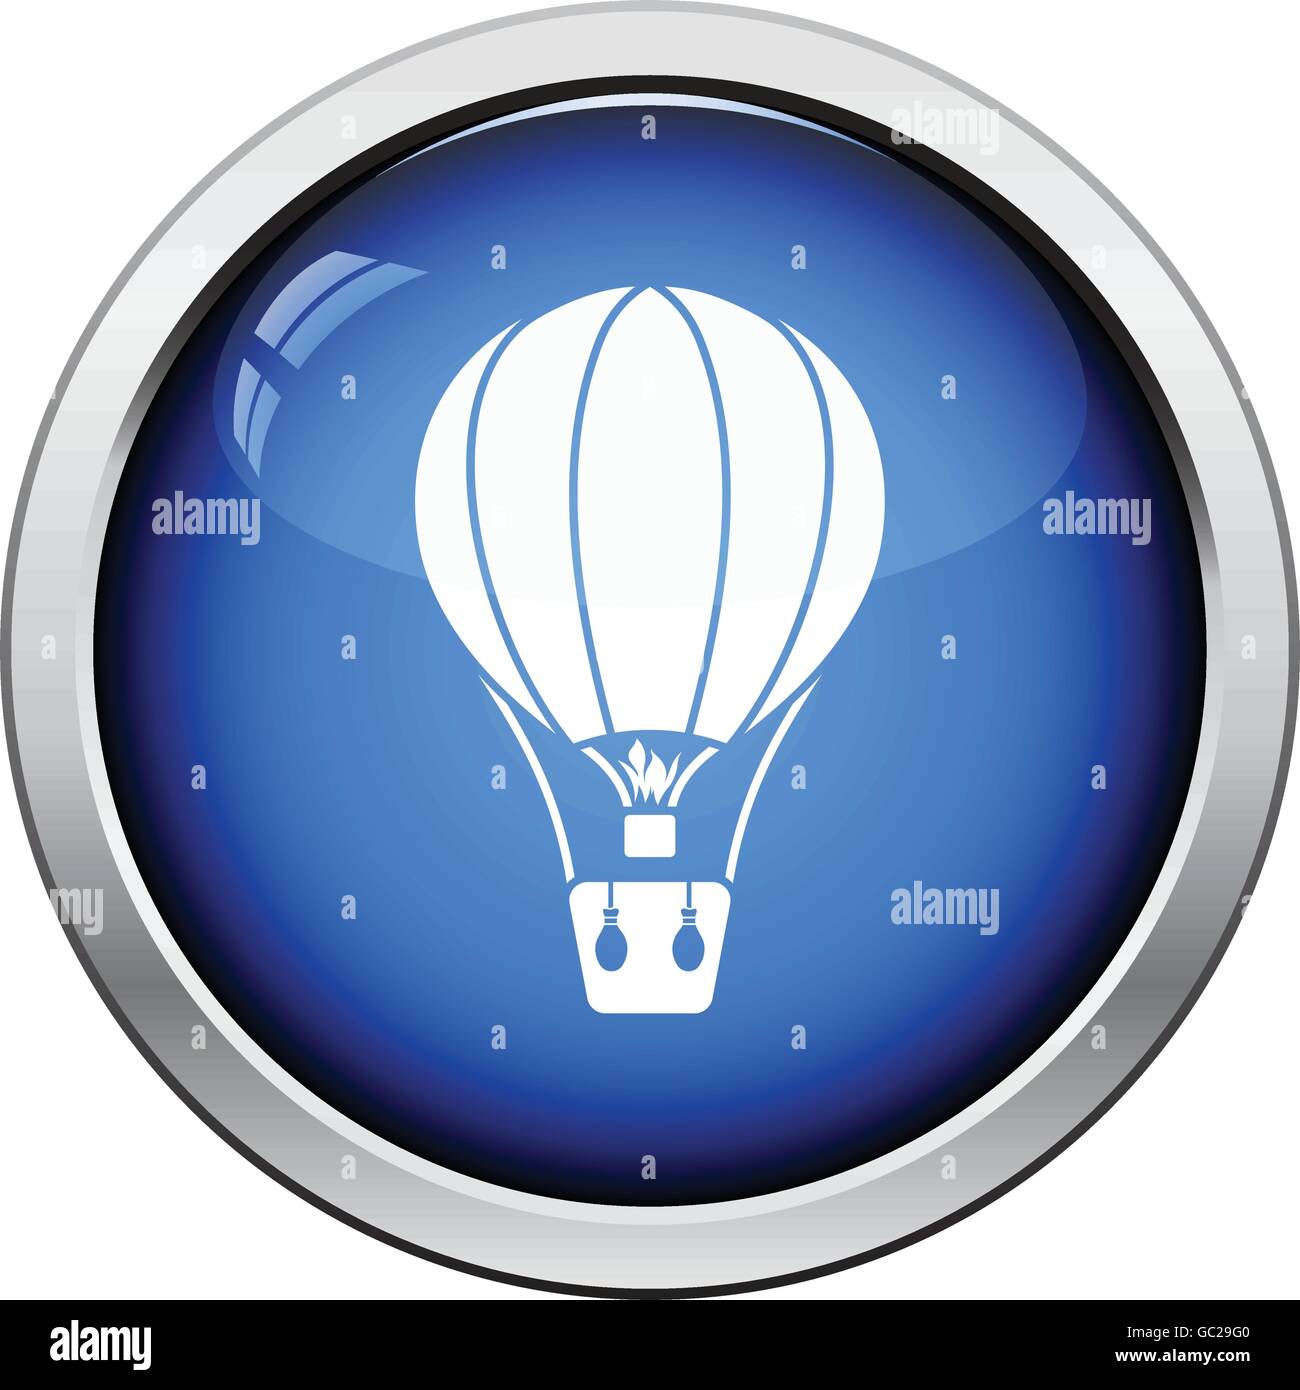 Hot air balloon icon. Glossy button design. Vector illustration. Stock Vector